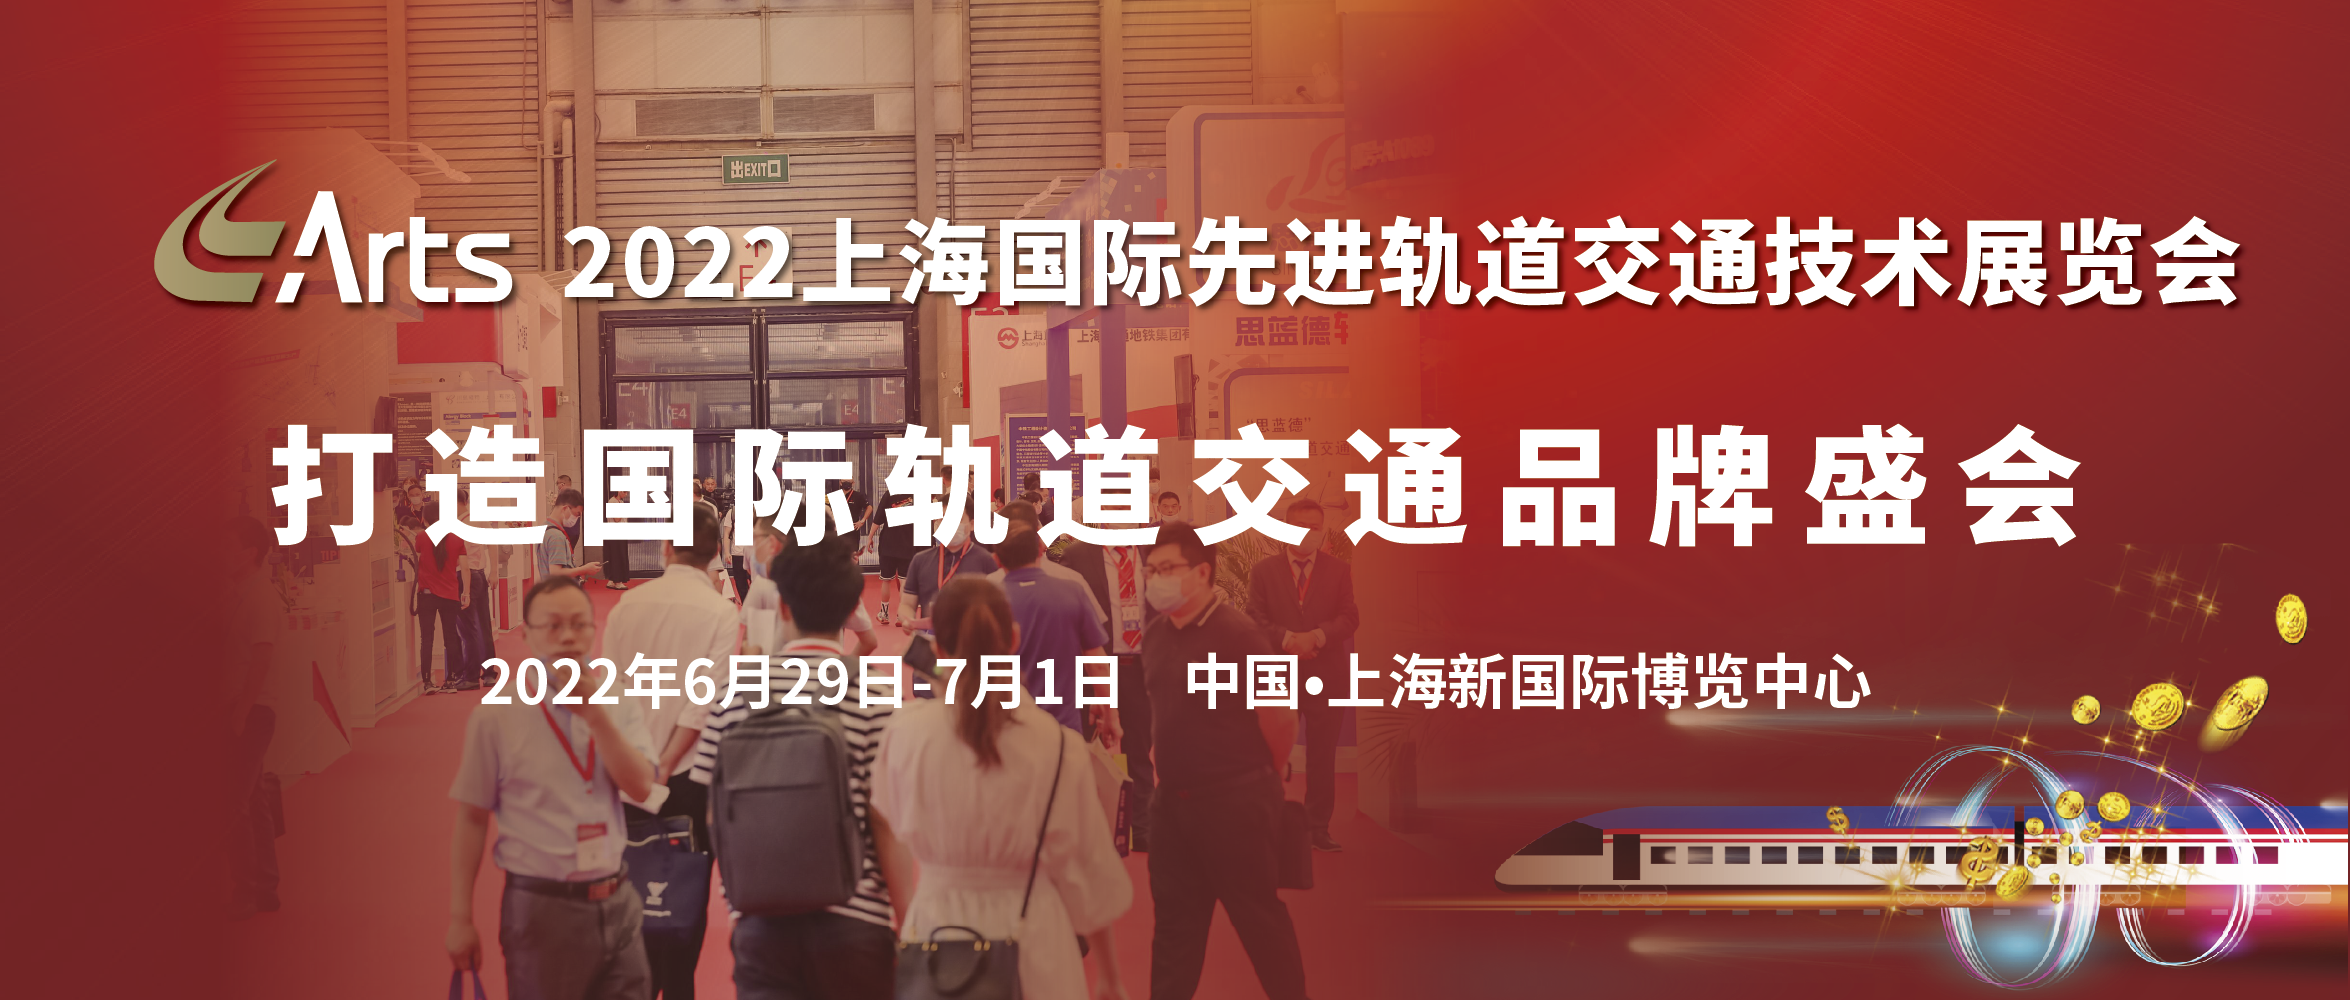 万众瞩目 共襄盛举 | 第17届2022上海国际先进轨道交通技术展览会将于6月盛大开幕(图1)